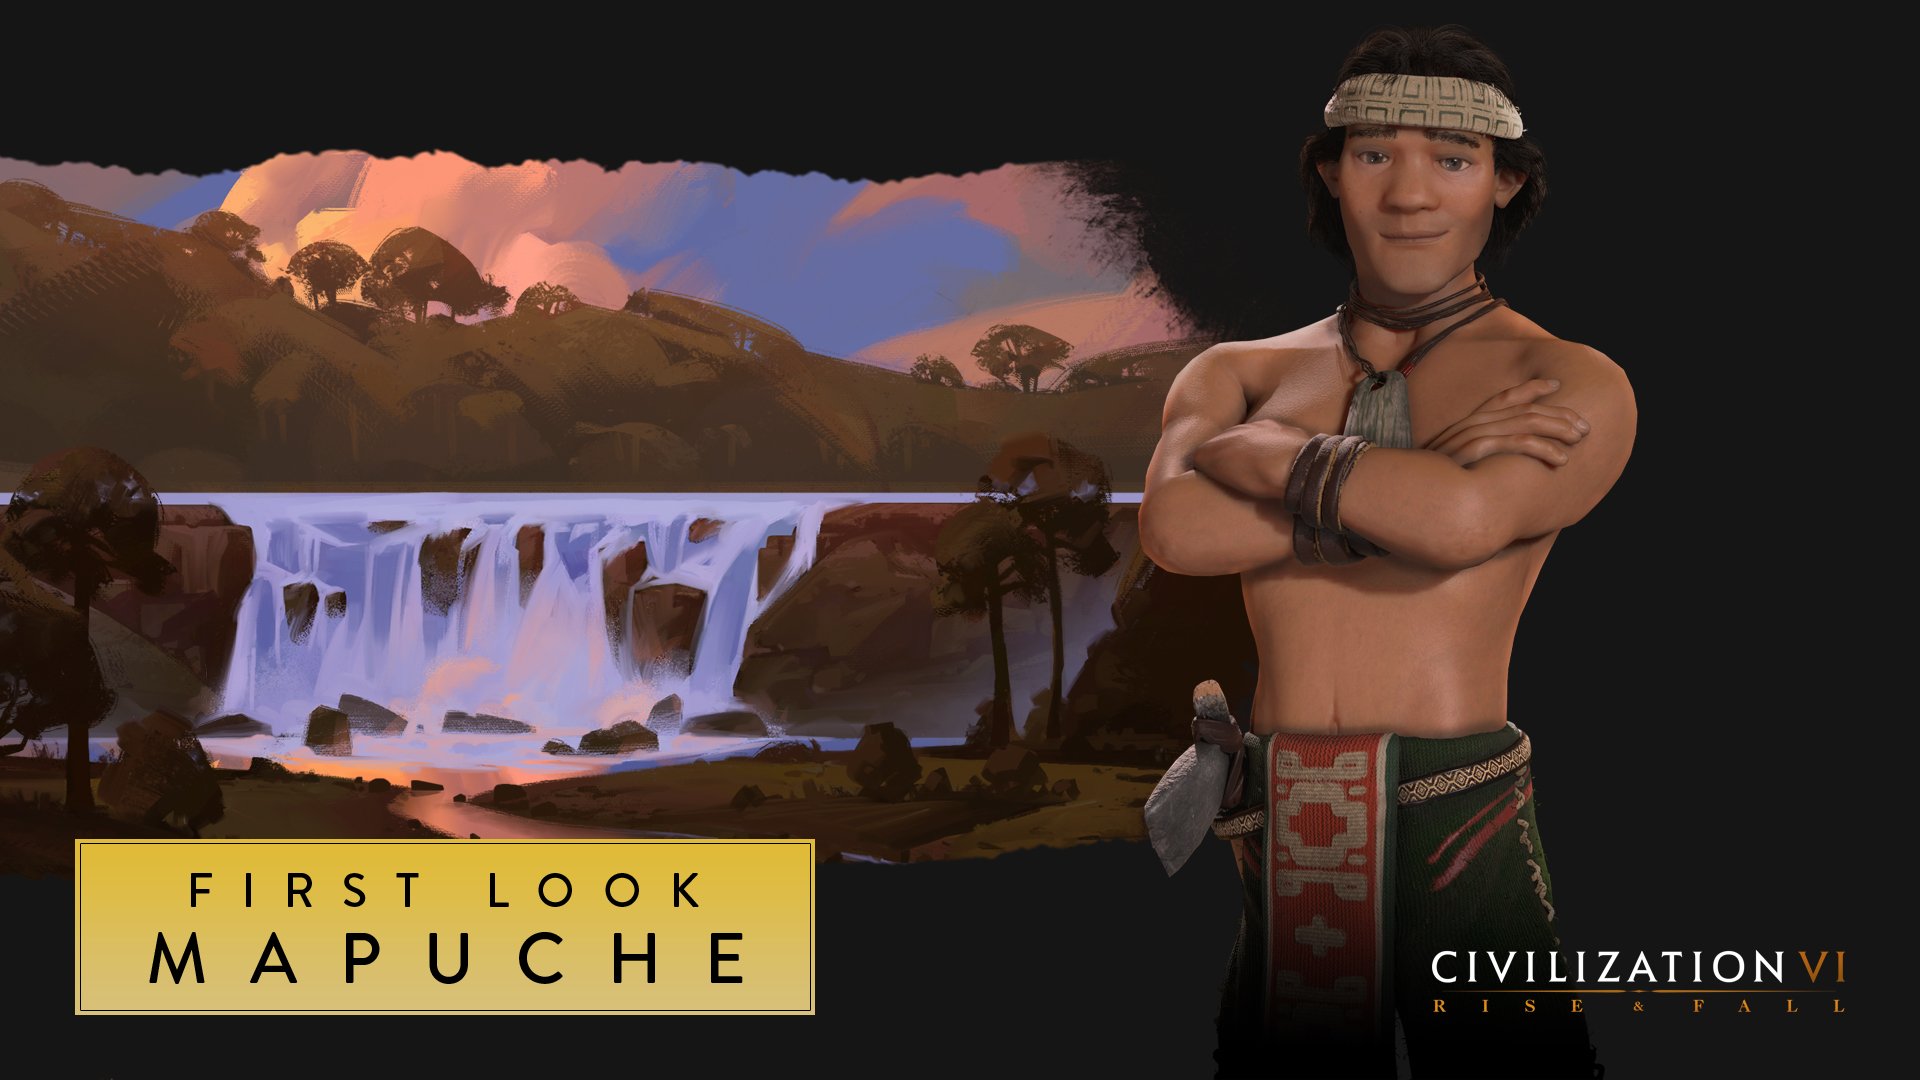 Lautaro liderará a los mapuche en popular juego de estrategia, el Civilization VI